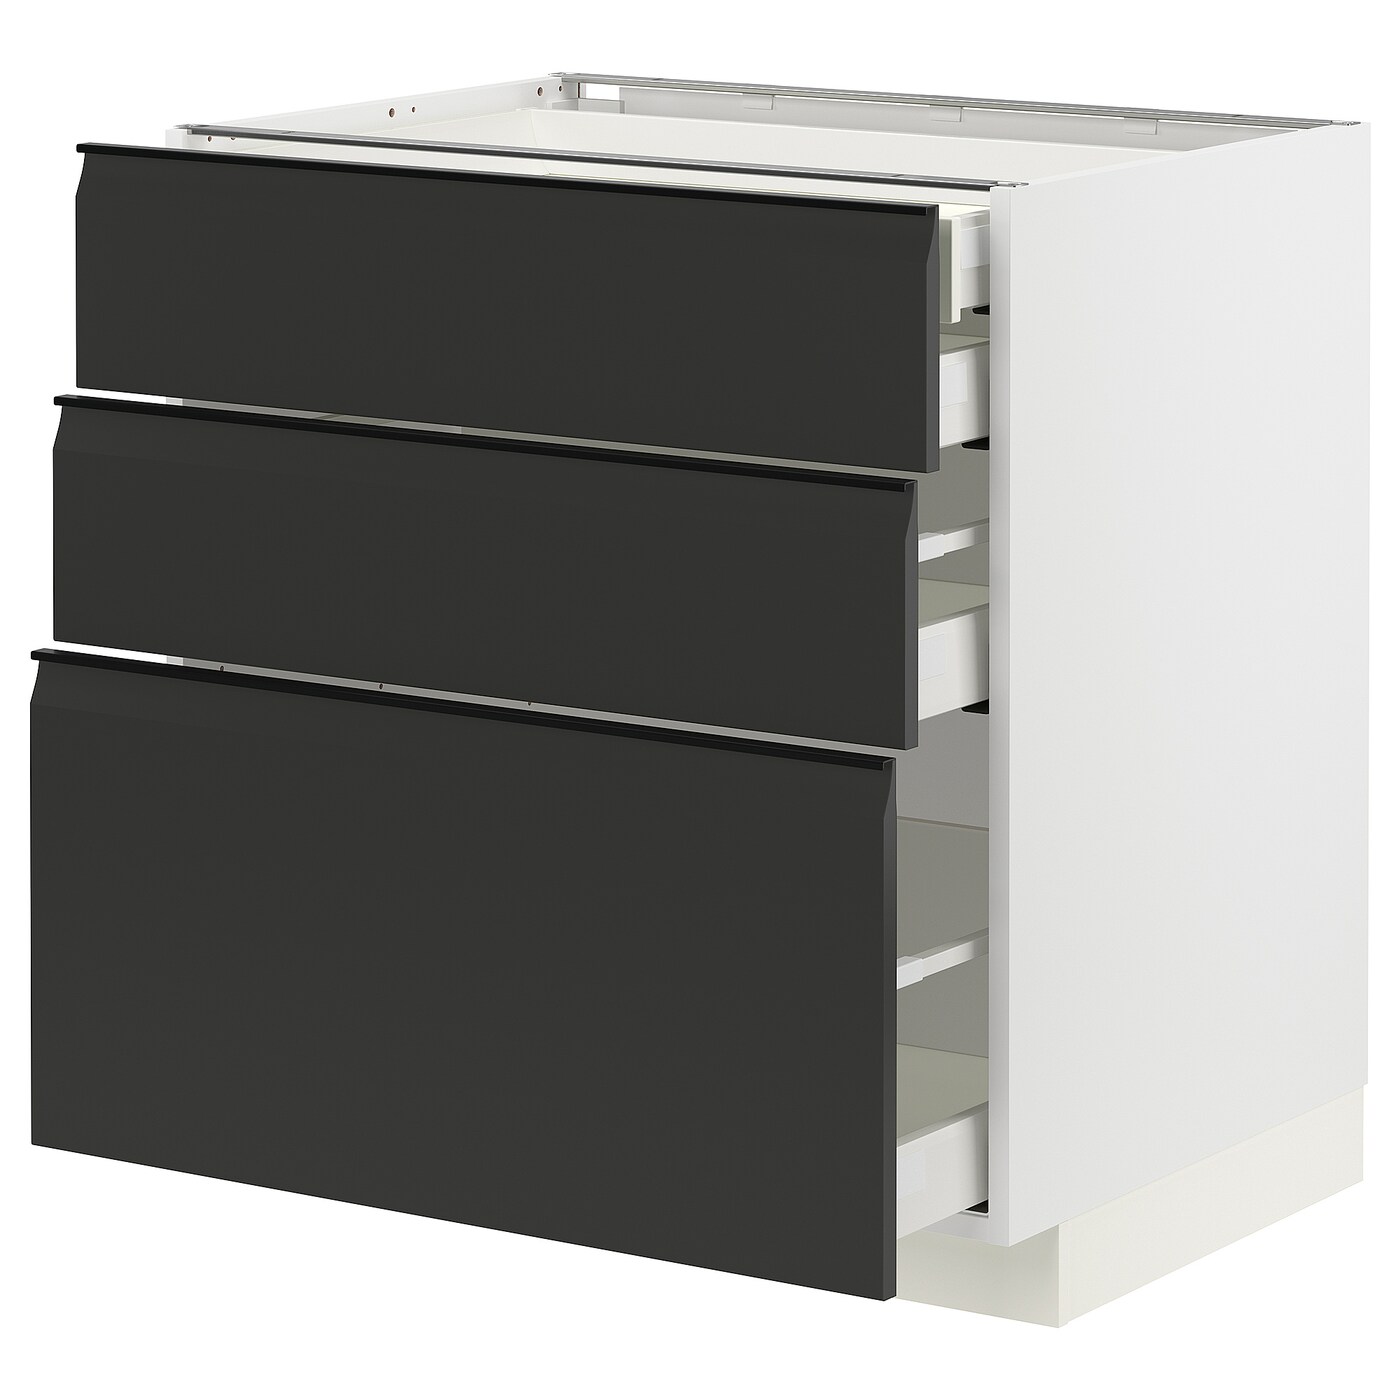 Напольный шкаф  - IKEA METOD MAXIMERA, 88x61,6x80см, белый/черный, МЕТОД МАКСИМЕРА ИКЕА